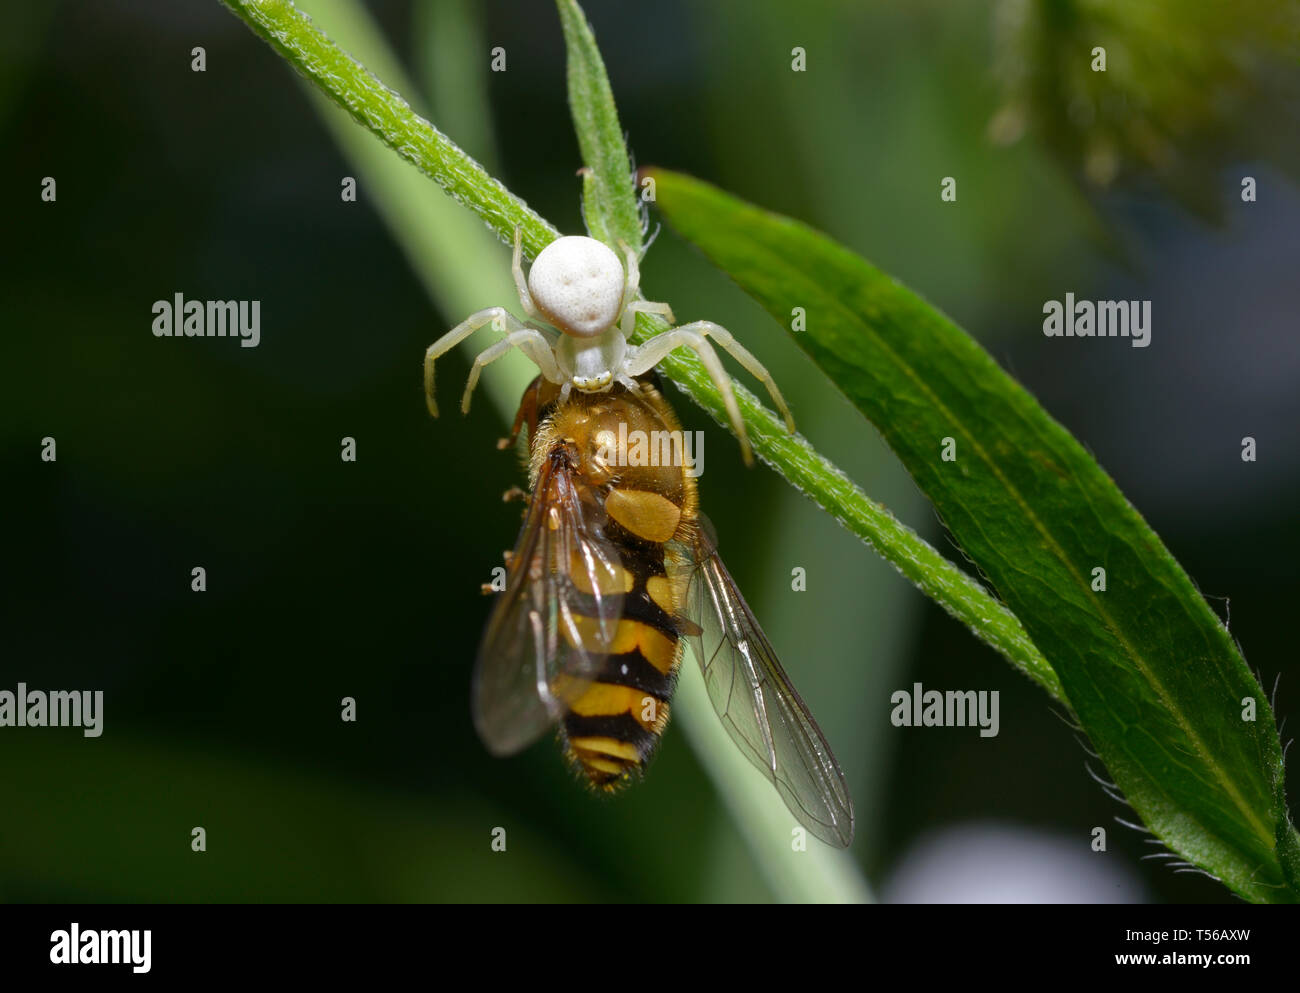 Piccolo ragno di granchio bianco Thomisidae che mangia un mirtillo su uno stelo vegetale Foto Stock